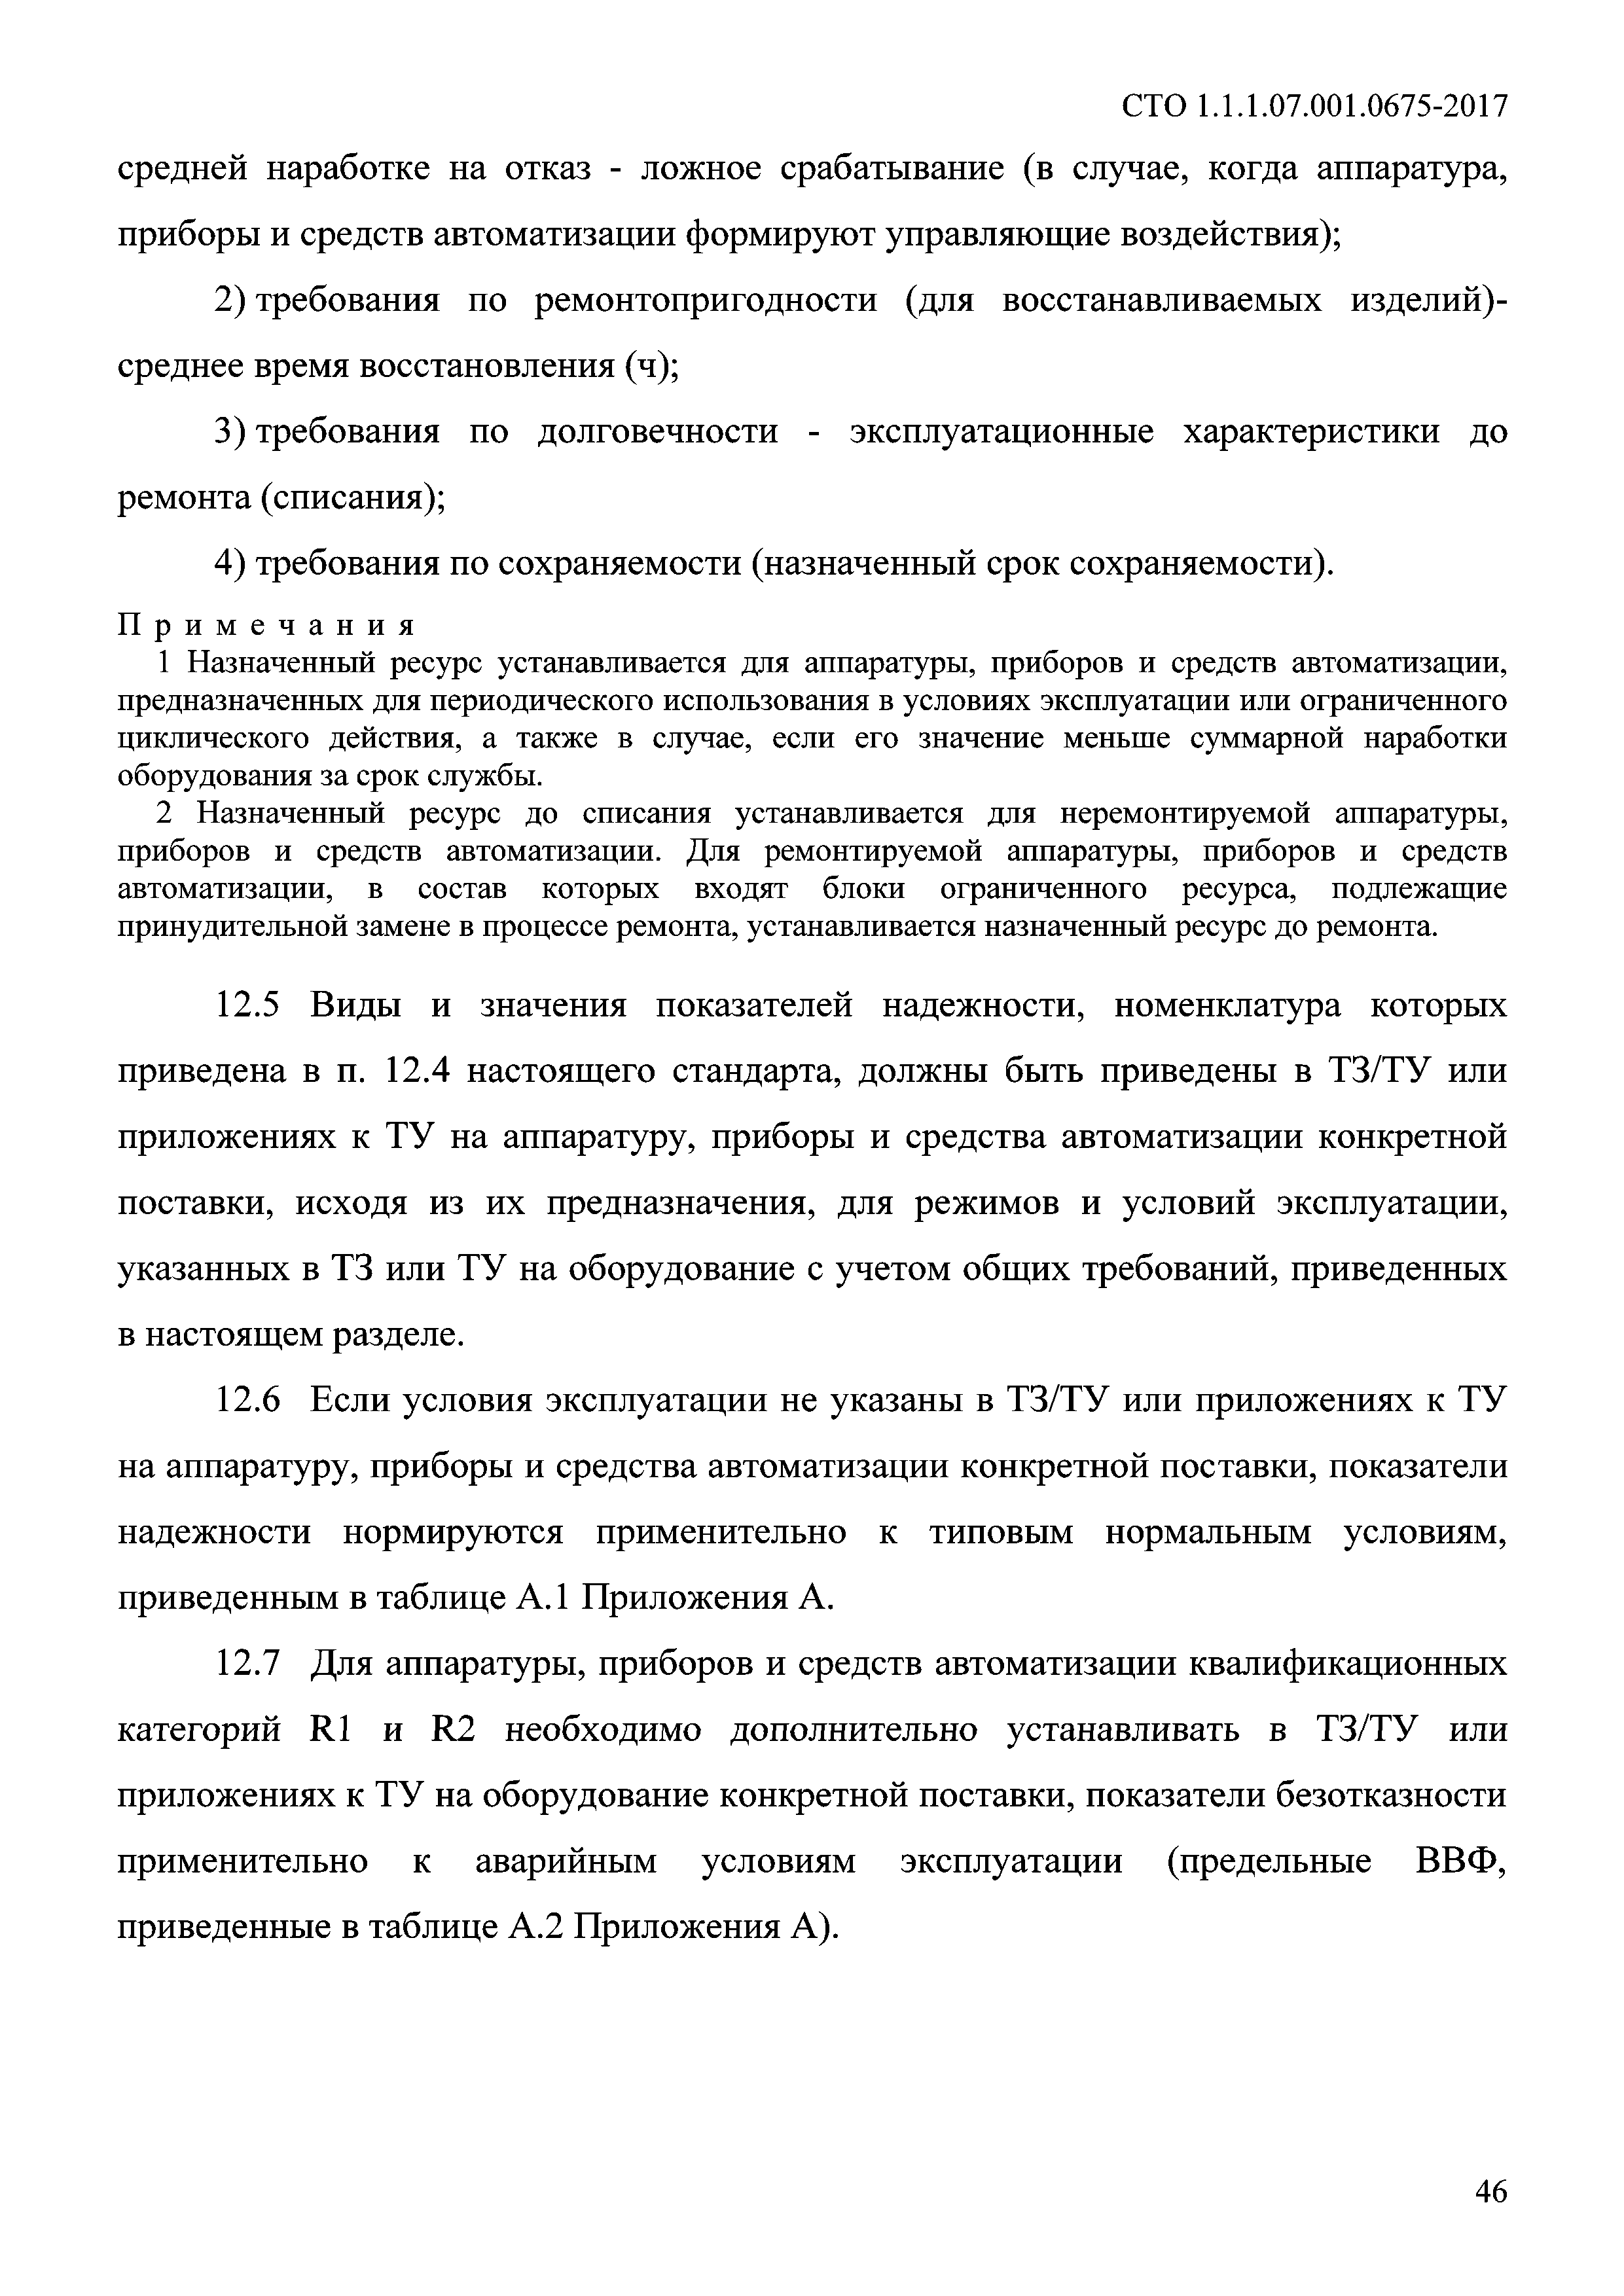 СТО 1.1.1.07.001.0675-2017